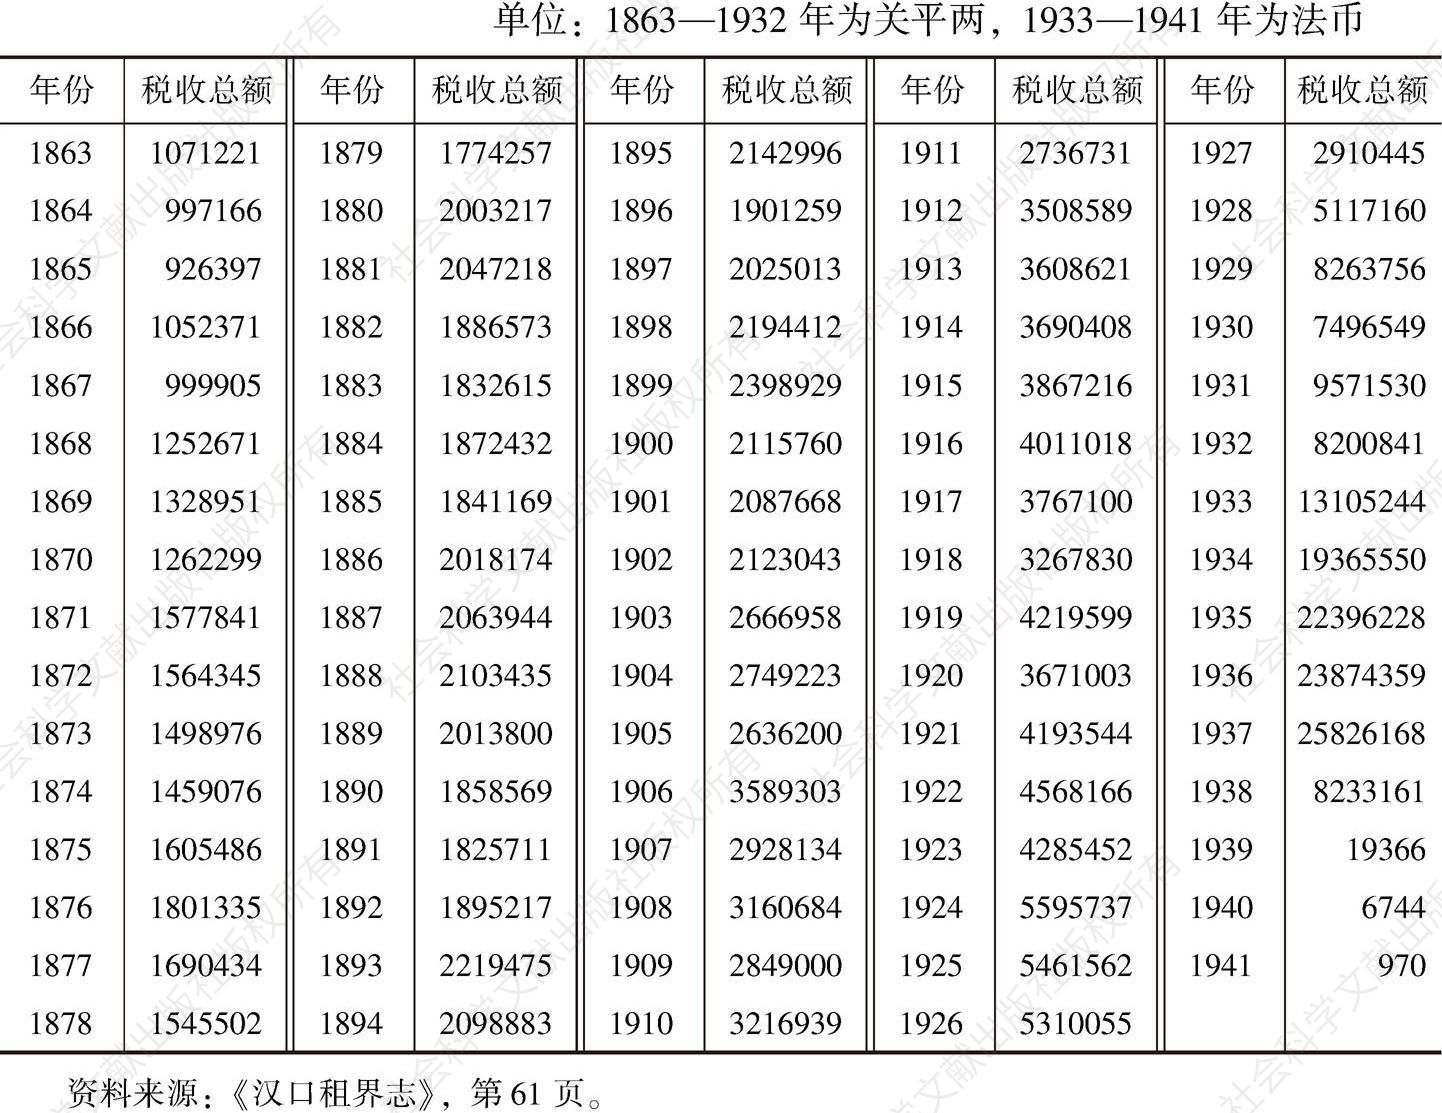 表2 1863—1941年江汉关关税收入统计